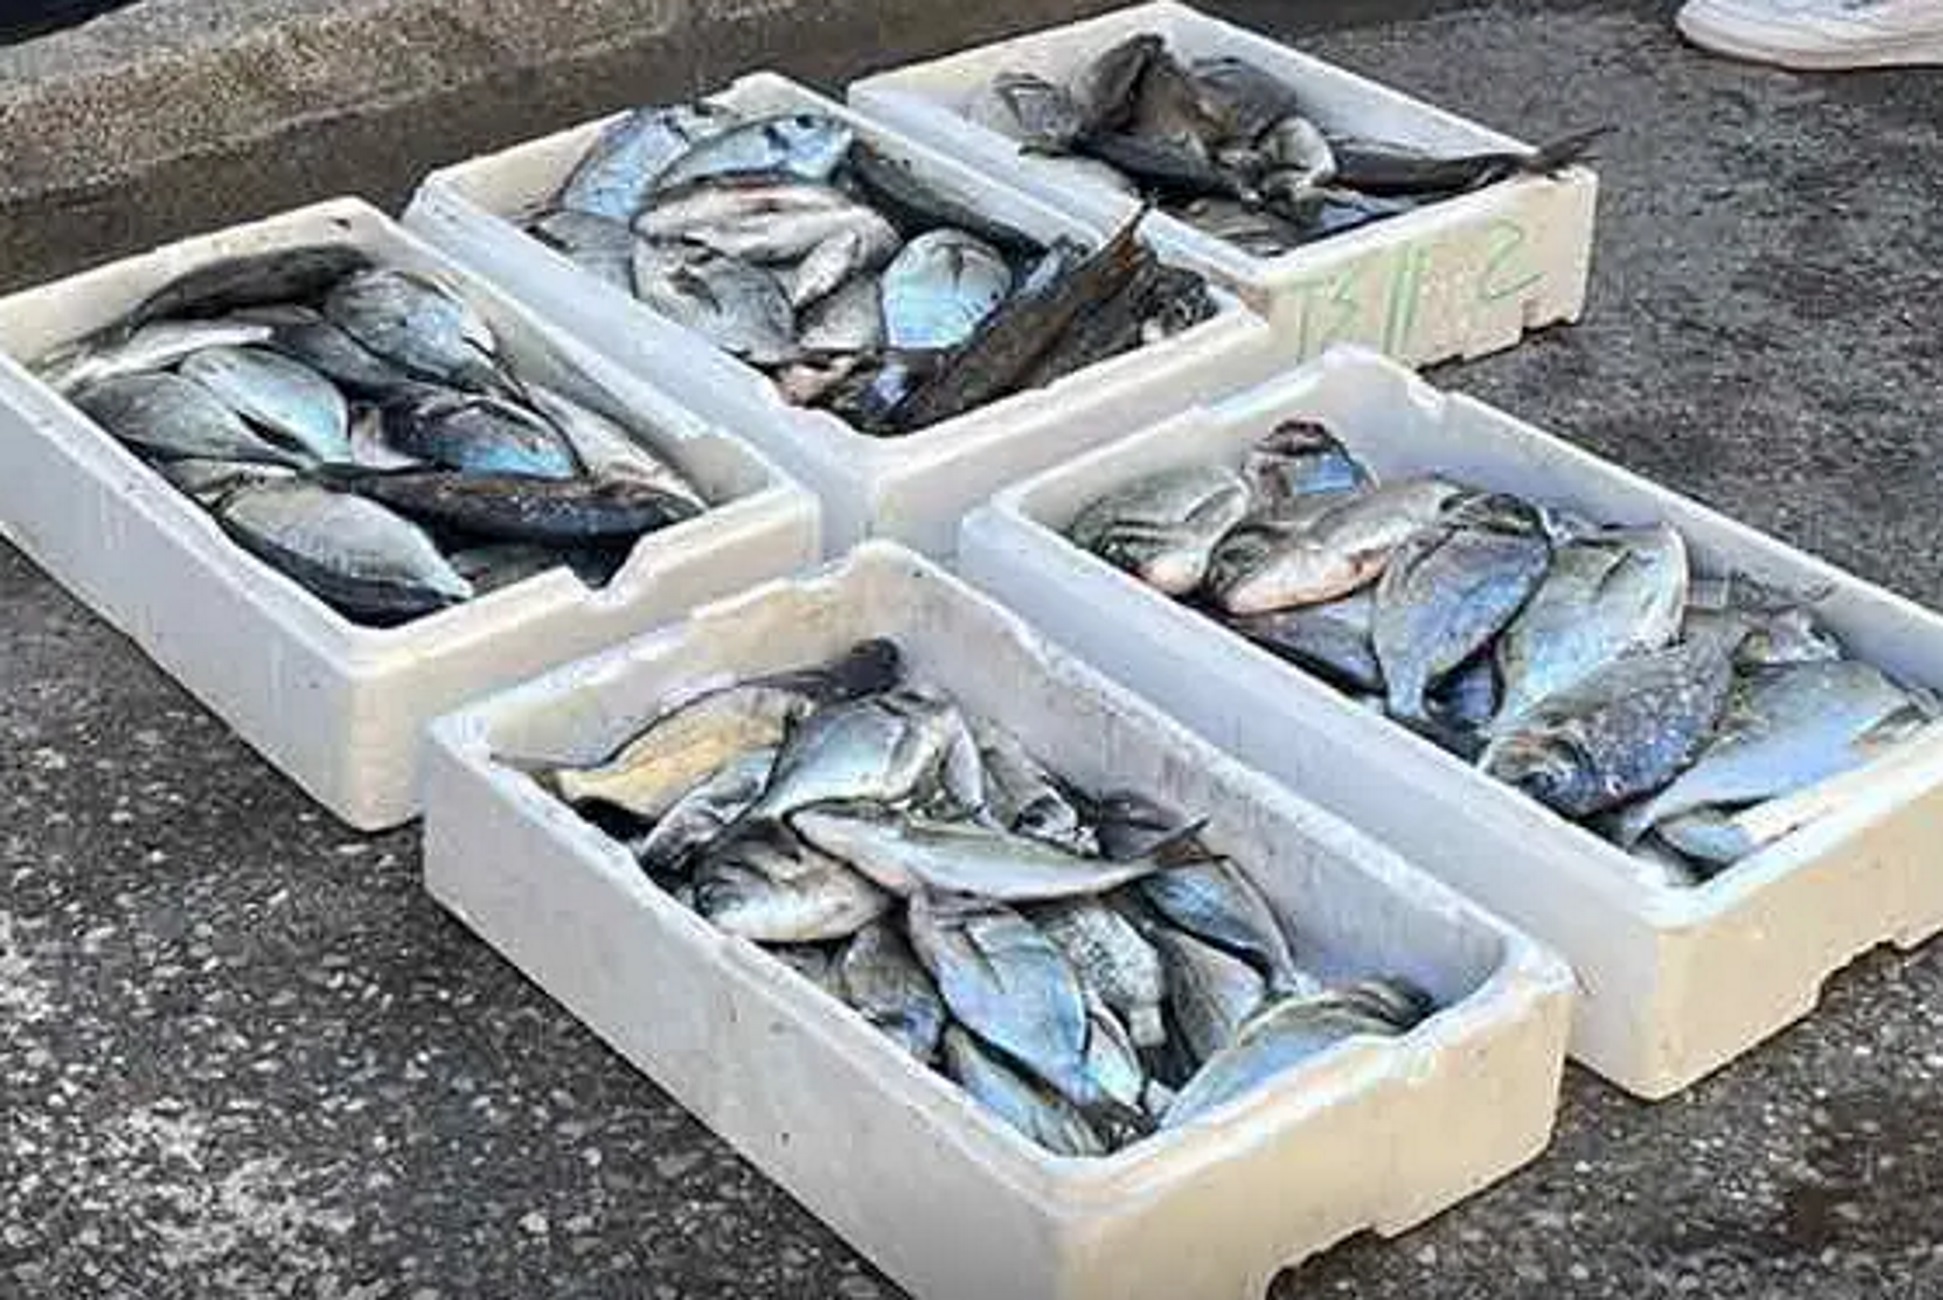 Λευκάδα: Ληστεία για ψάρια αξίας 2.000 ευρώ – Έβγαλαν μαχαίρι στον φύλακα και μπήκαν στην ιχθυοκαλλιέργεια